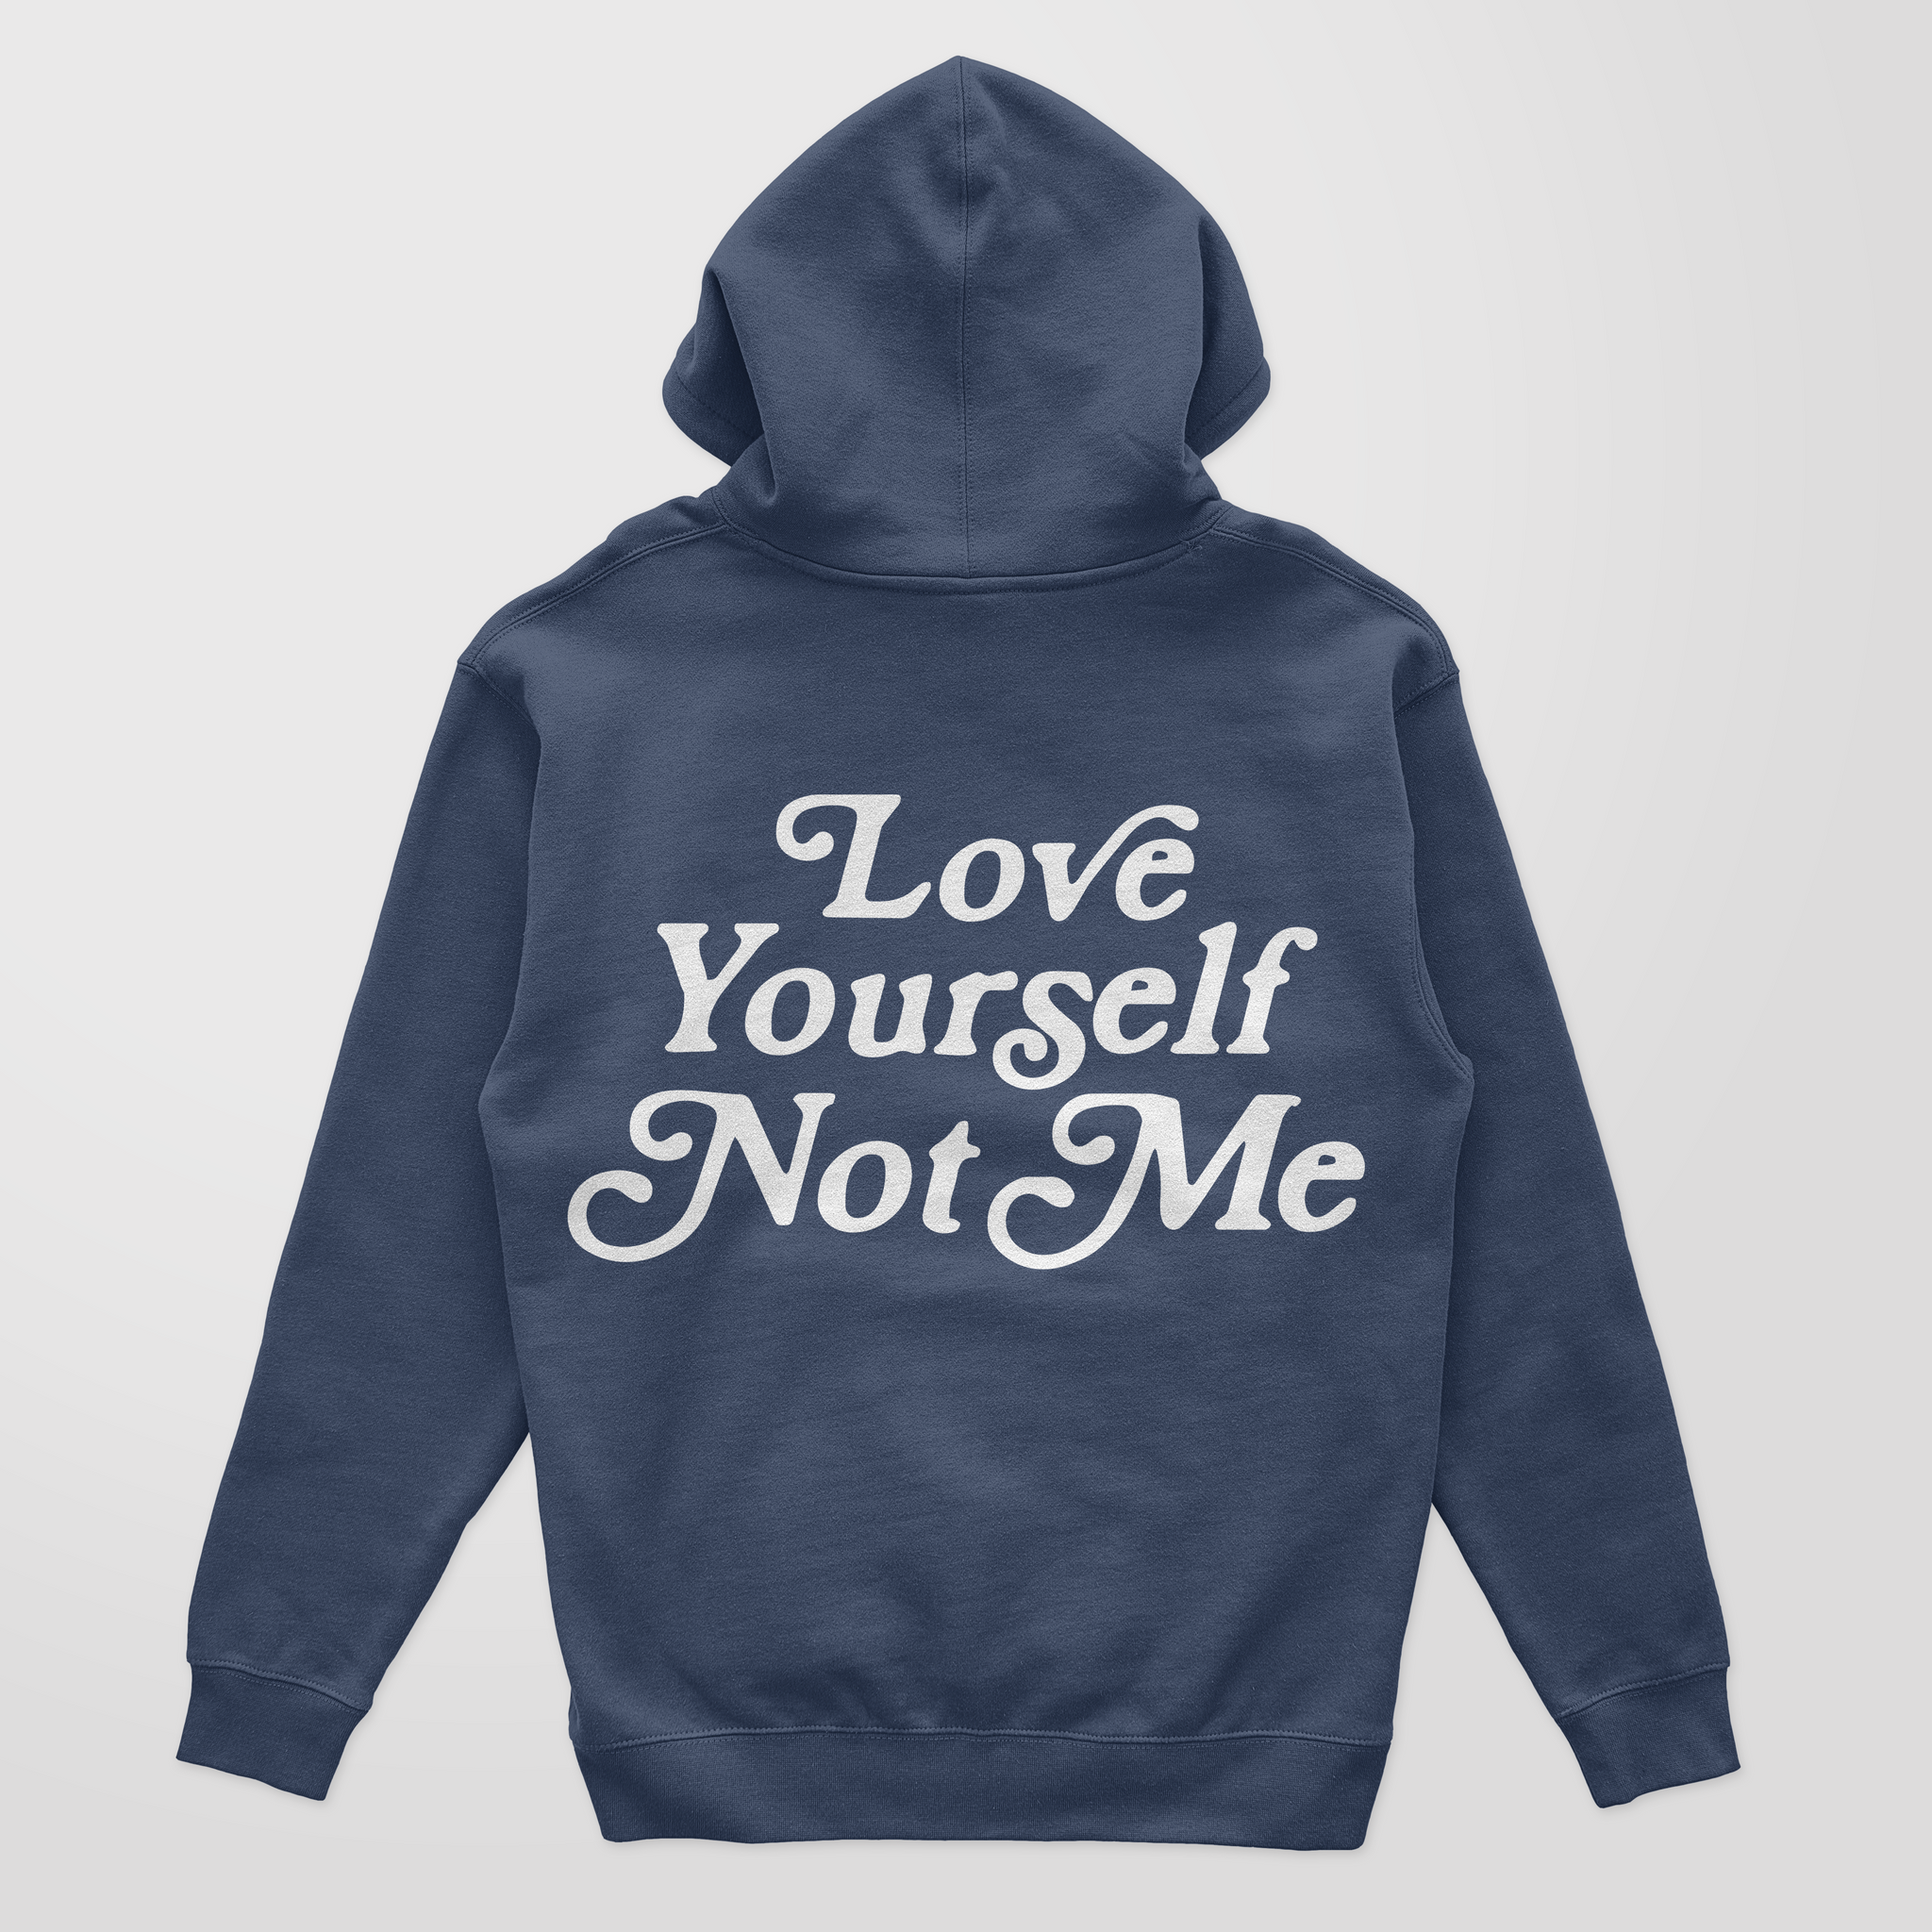 Love Yourself Not Me Hoodies